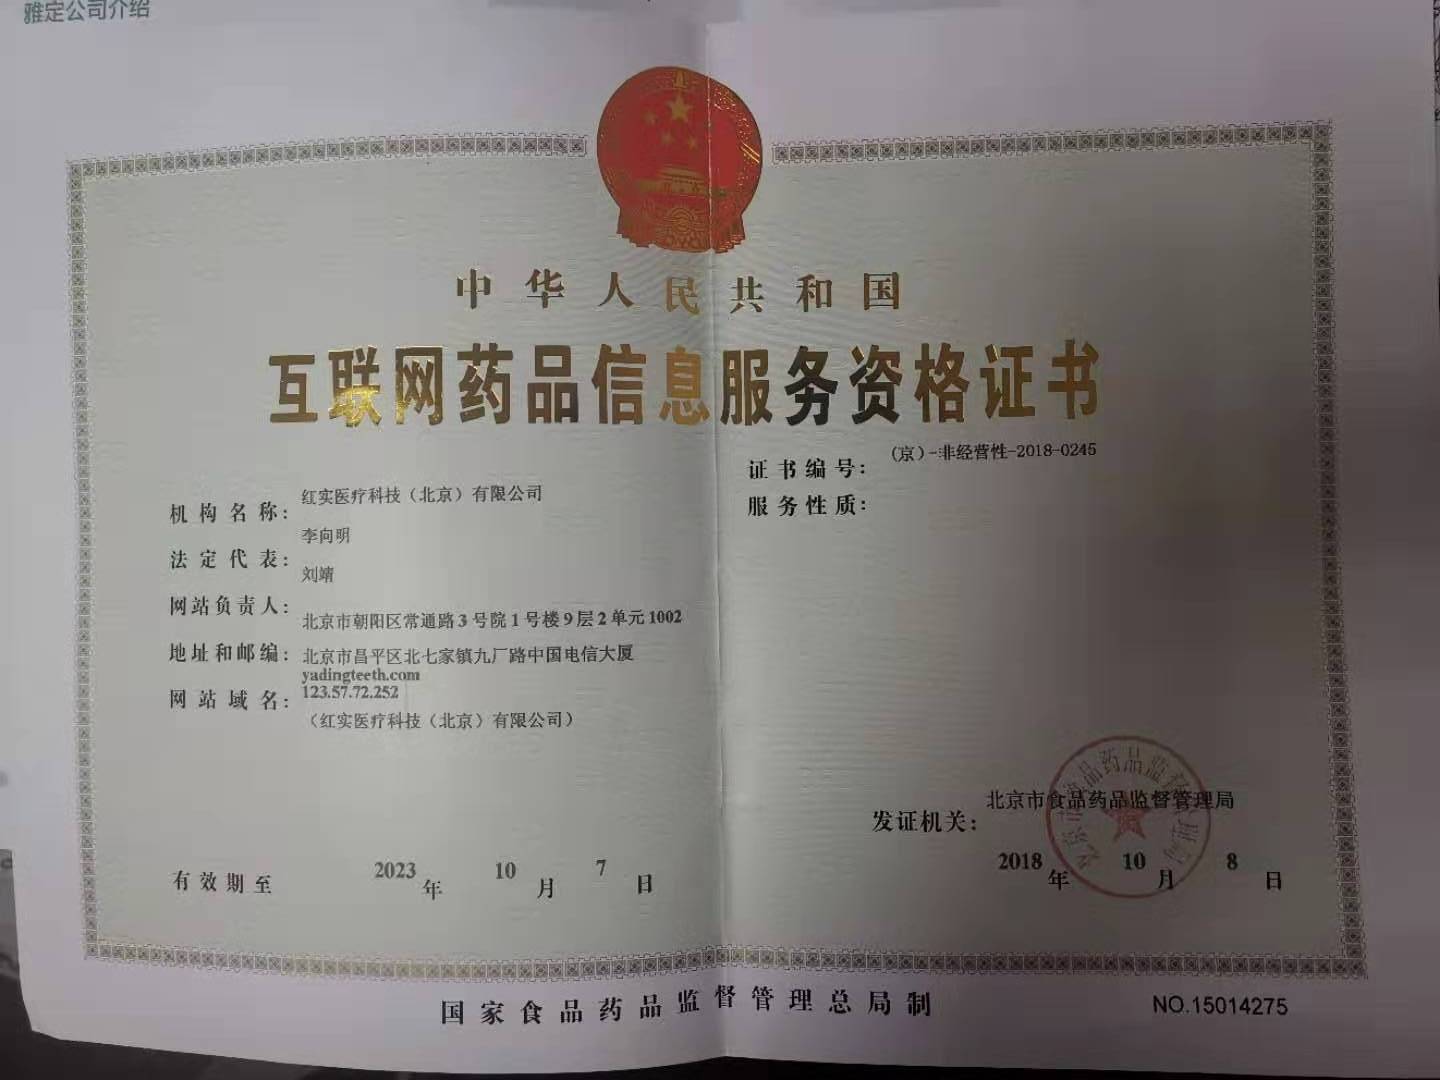 互联网药品信息服务资格证书 （京）-非经营性-2018-0245